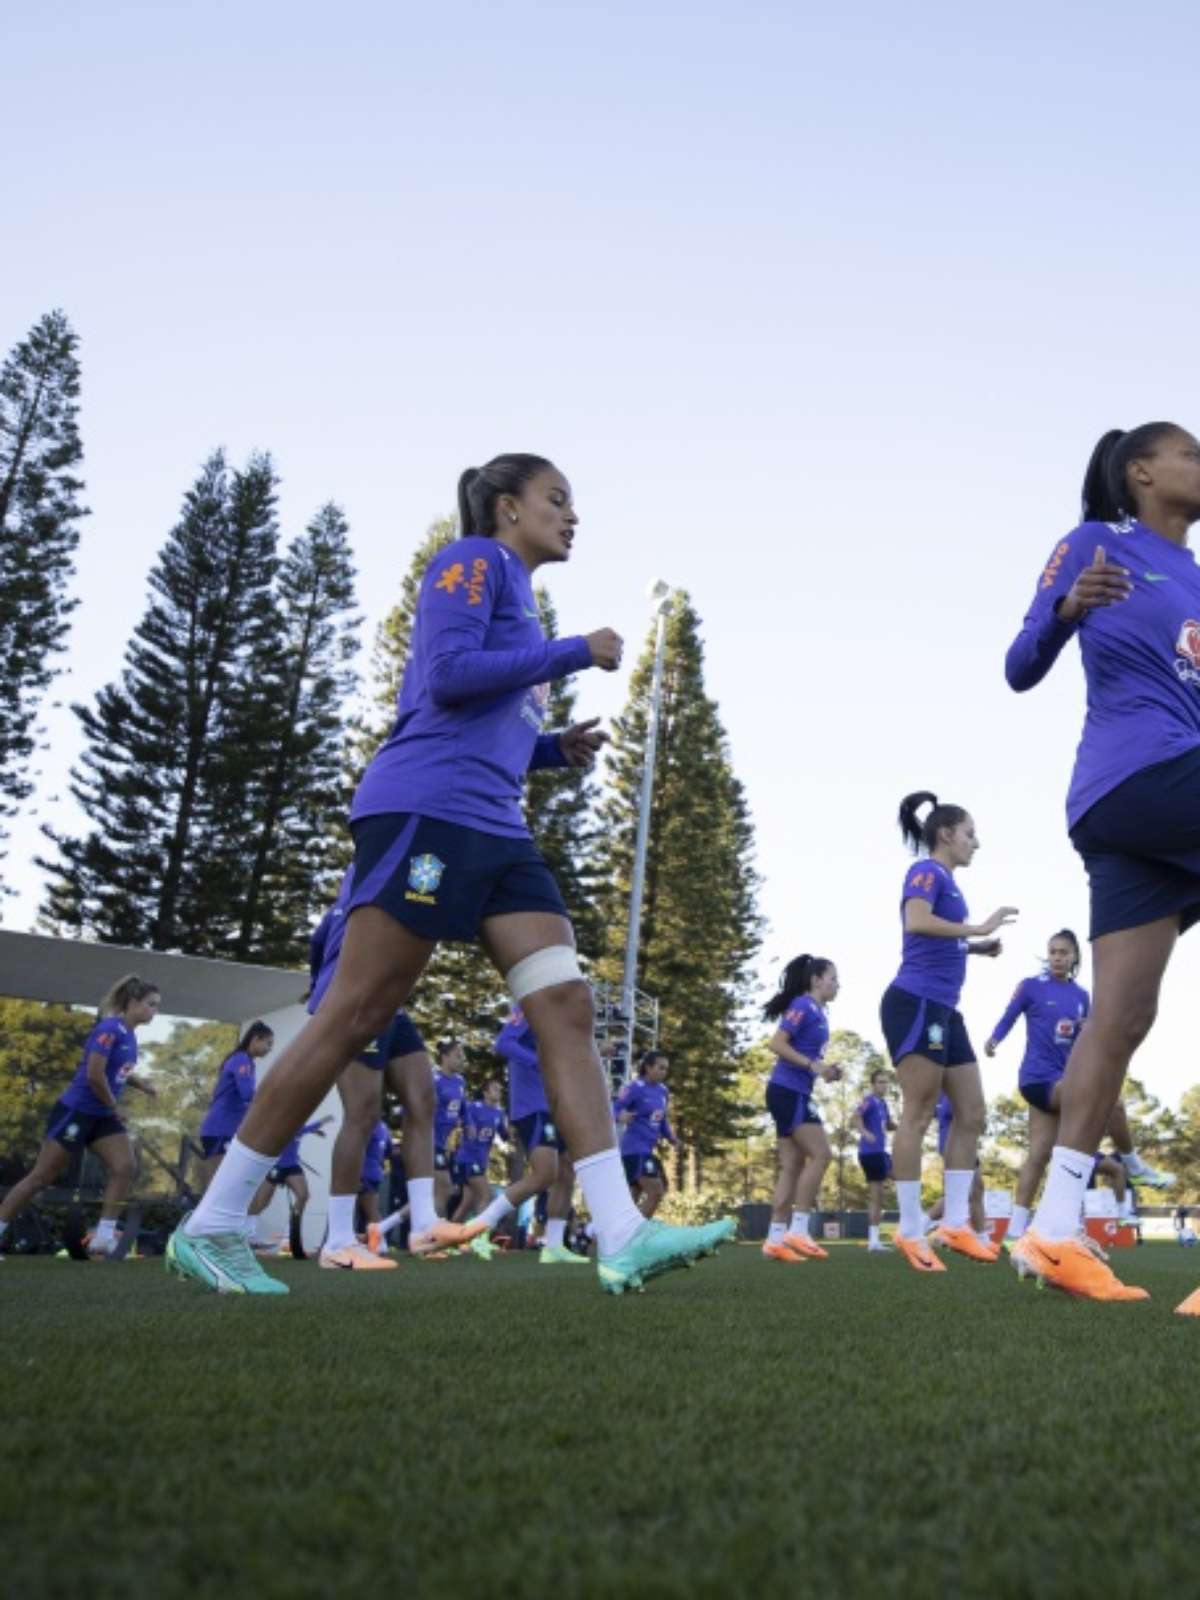 Copa do Mundo feminina terá ponto facultativo nos dias de jogos do Brasil,  diz jornal